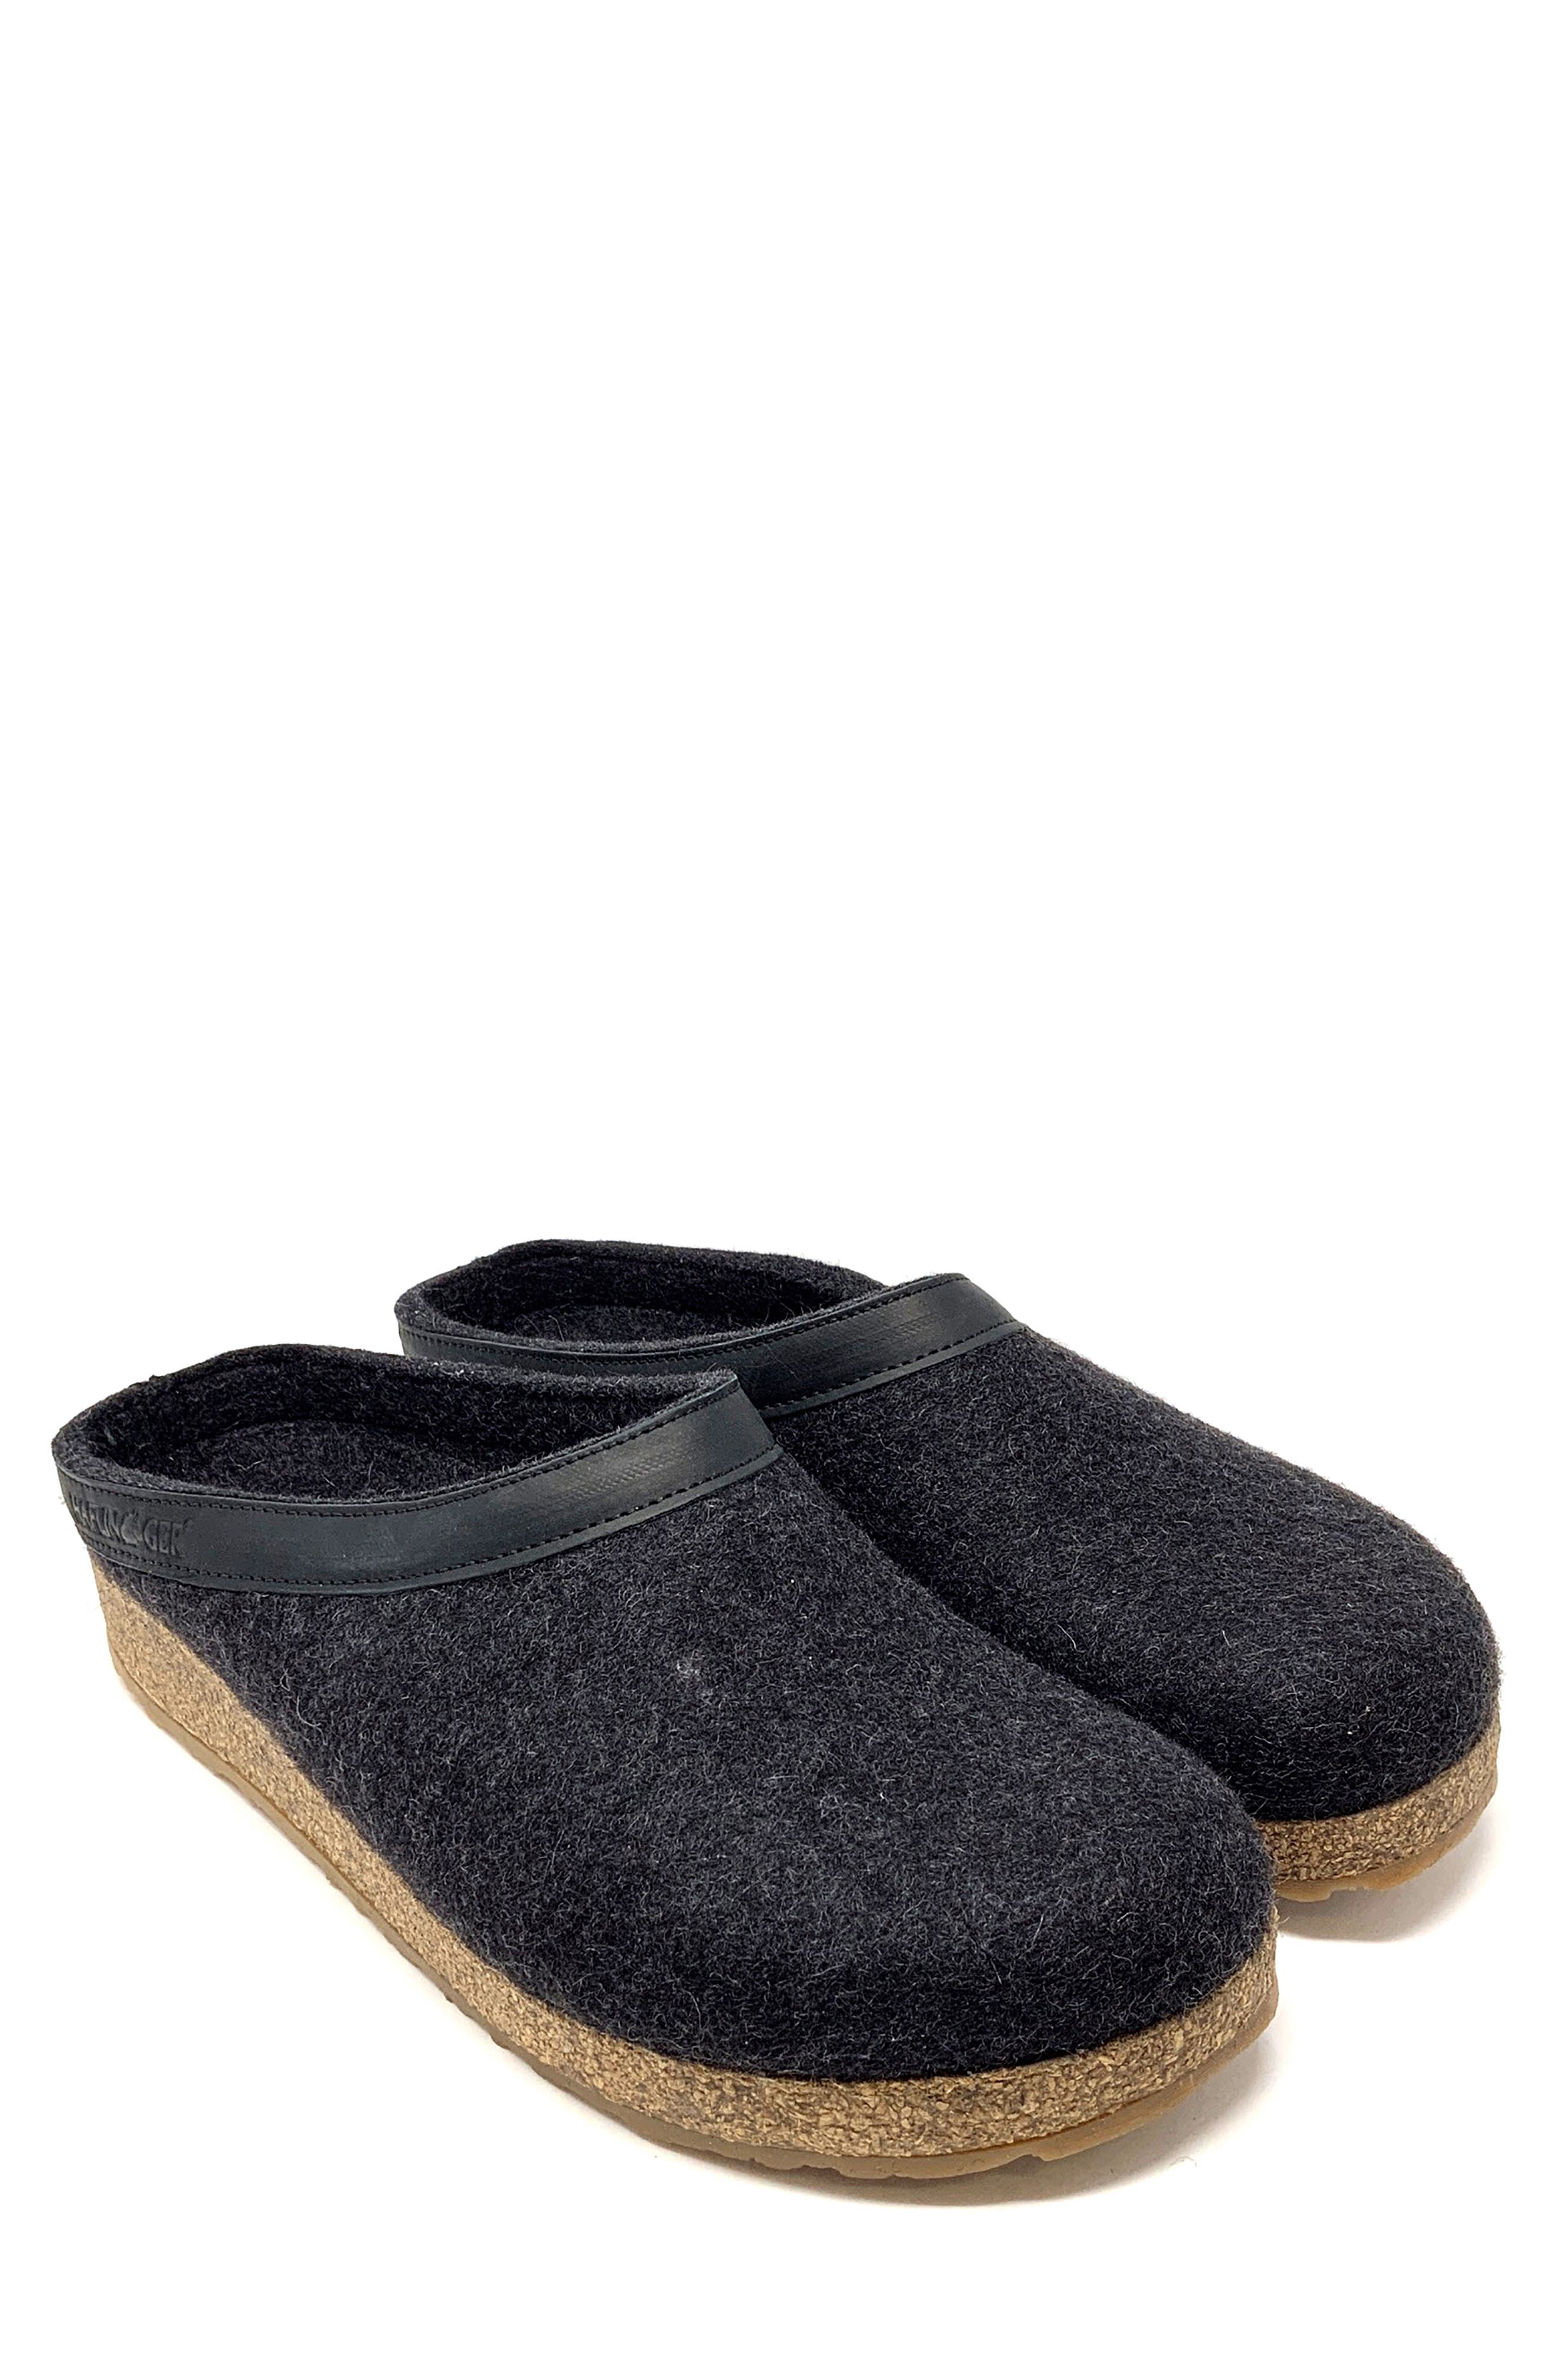 haflinger slippers black friday